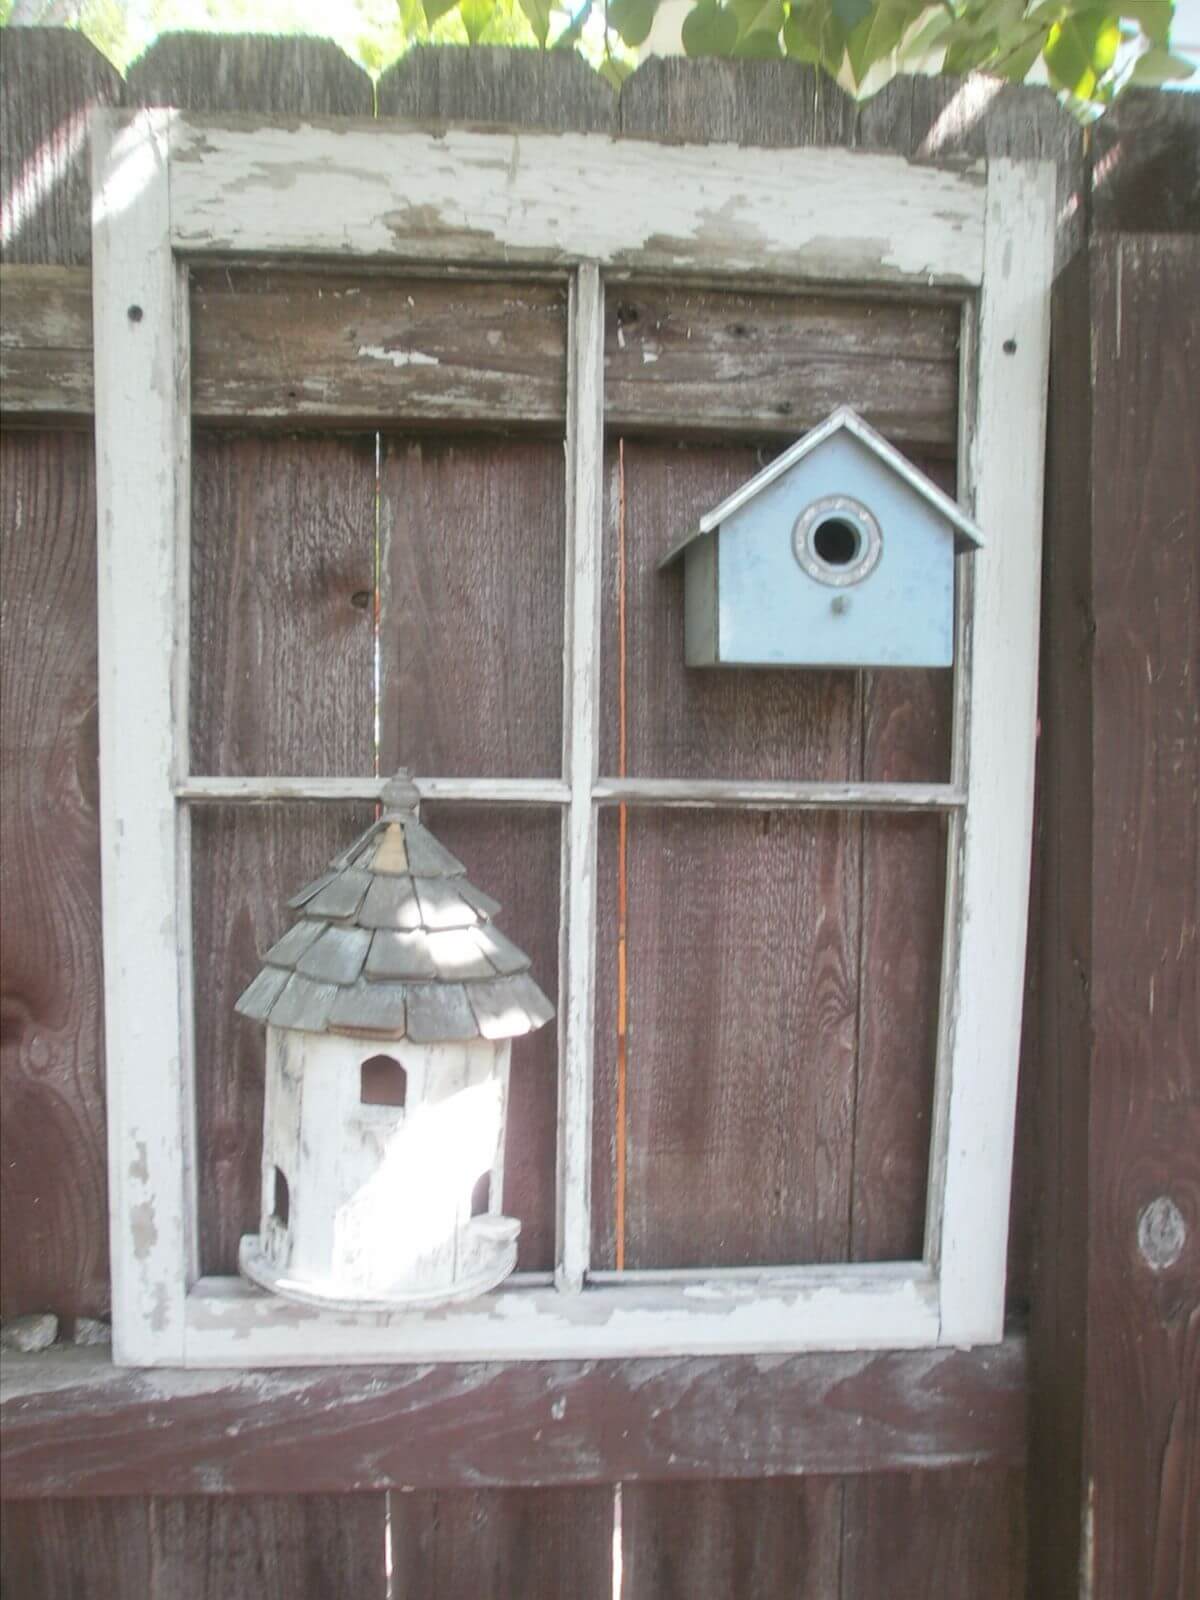 Frame a Cute Birdhouse on the Fence